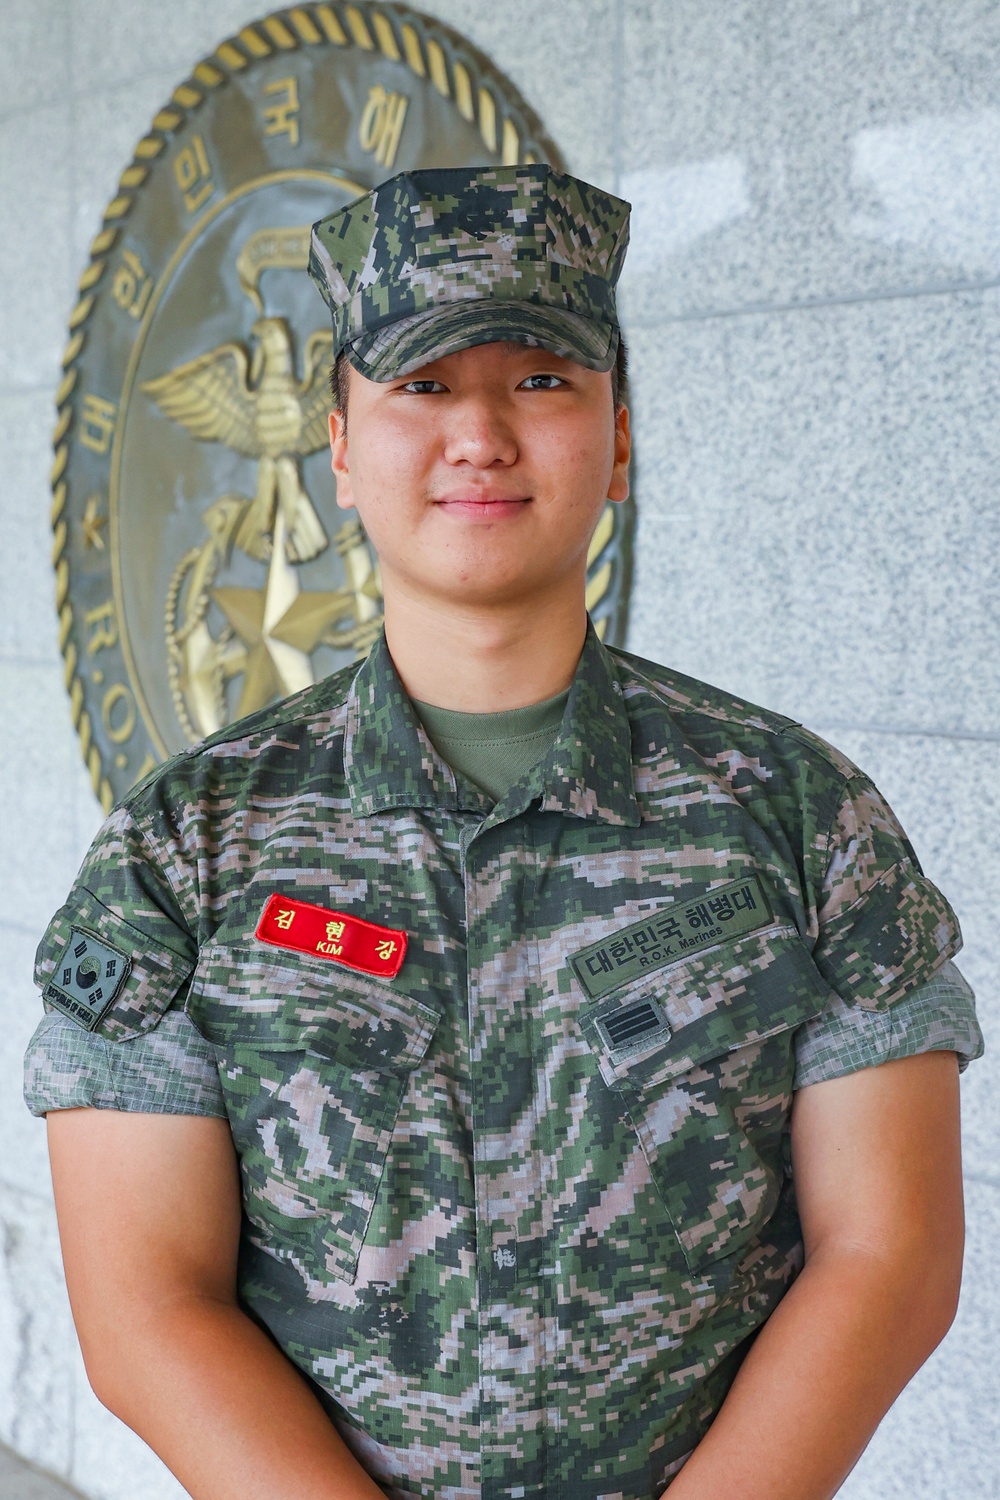 UFS 23: Republic of Korea Marine Cpl. Andrew Kim